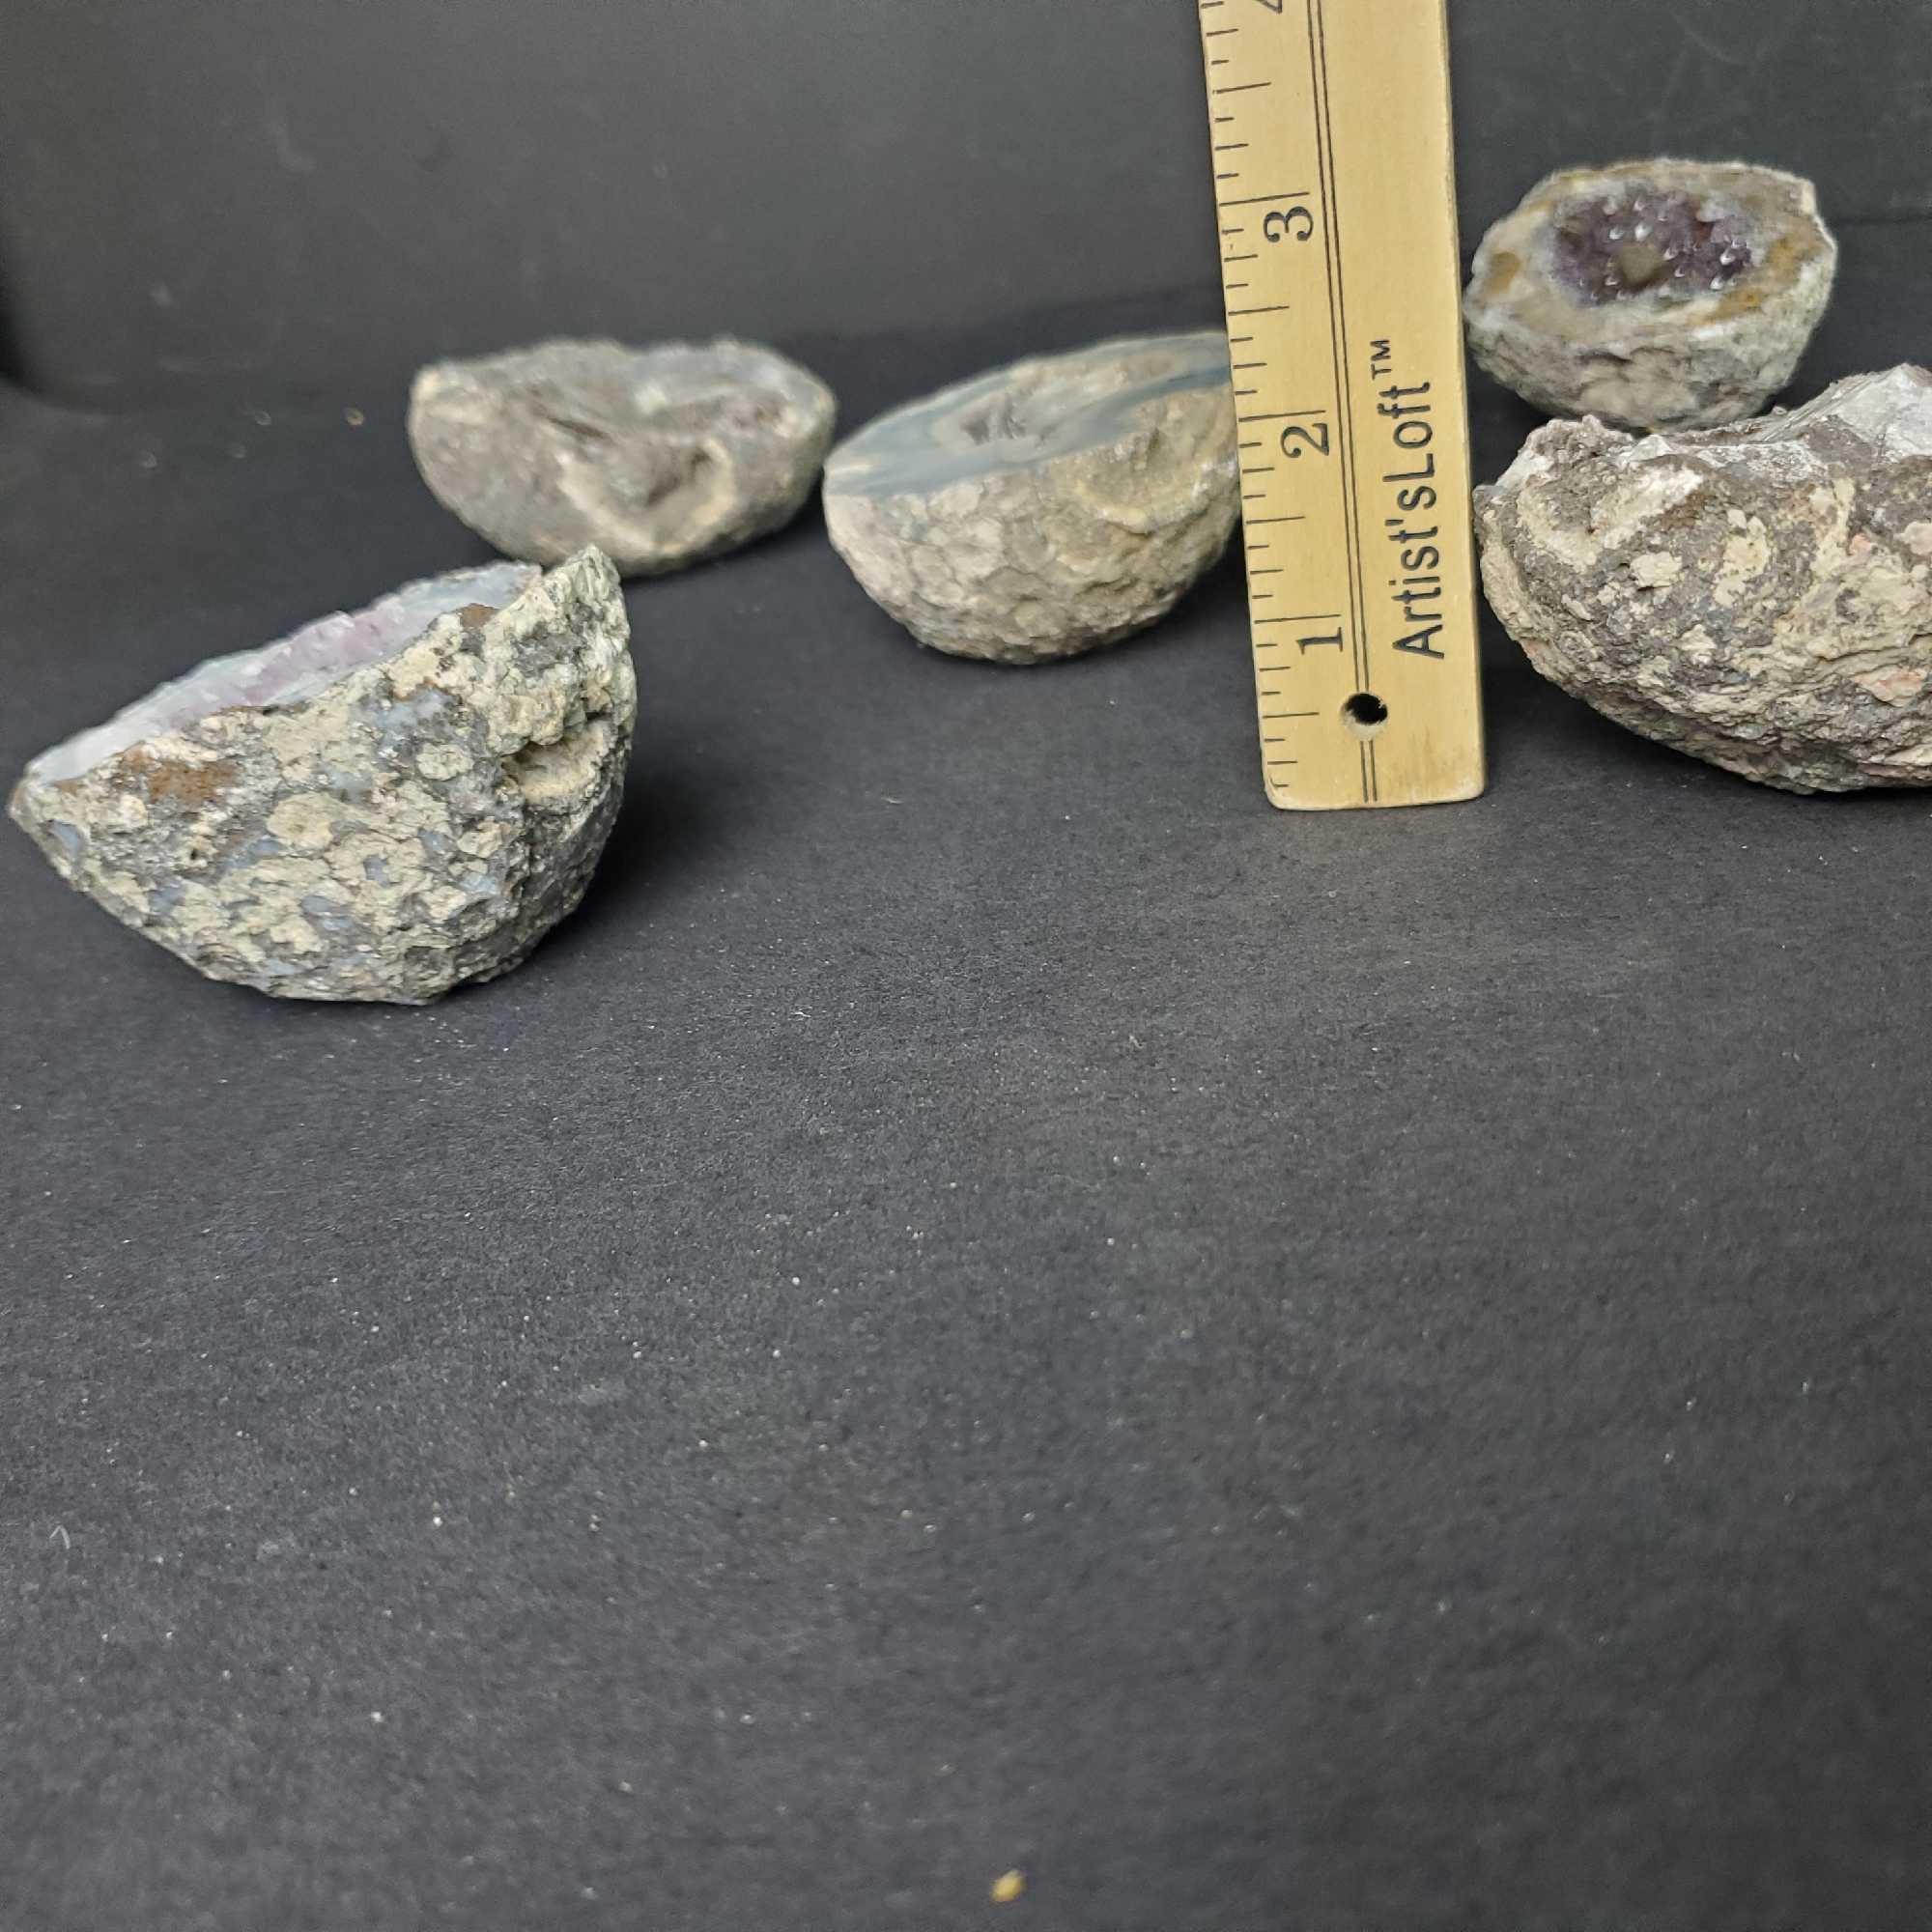 Lot of 5 quartz Geode specimens